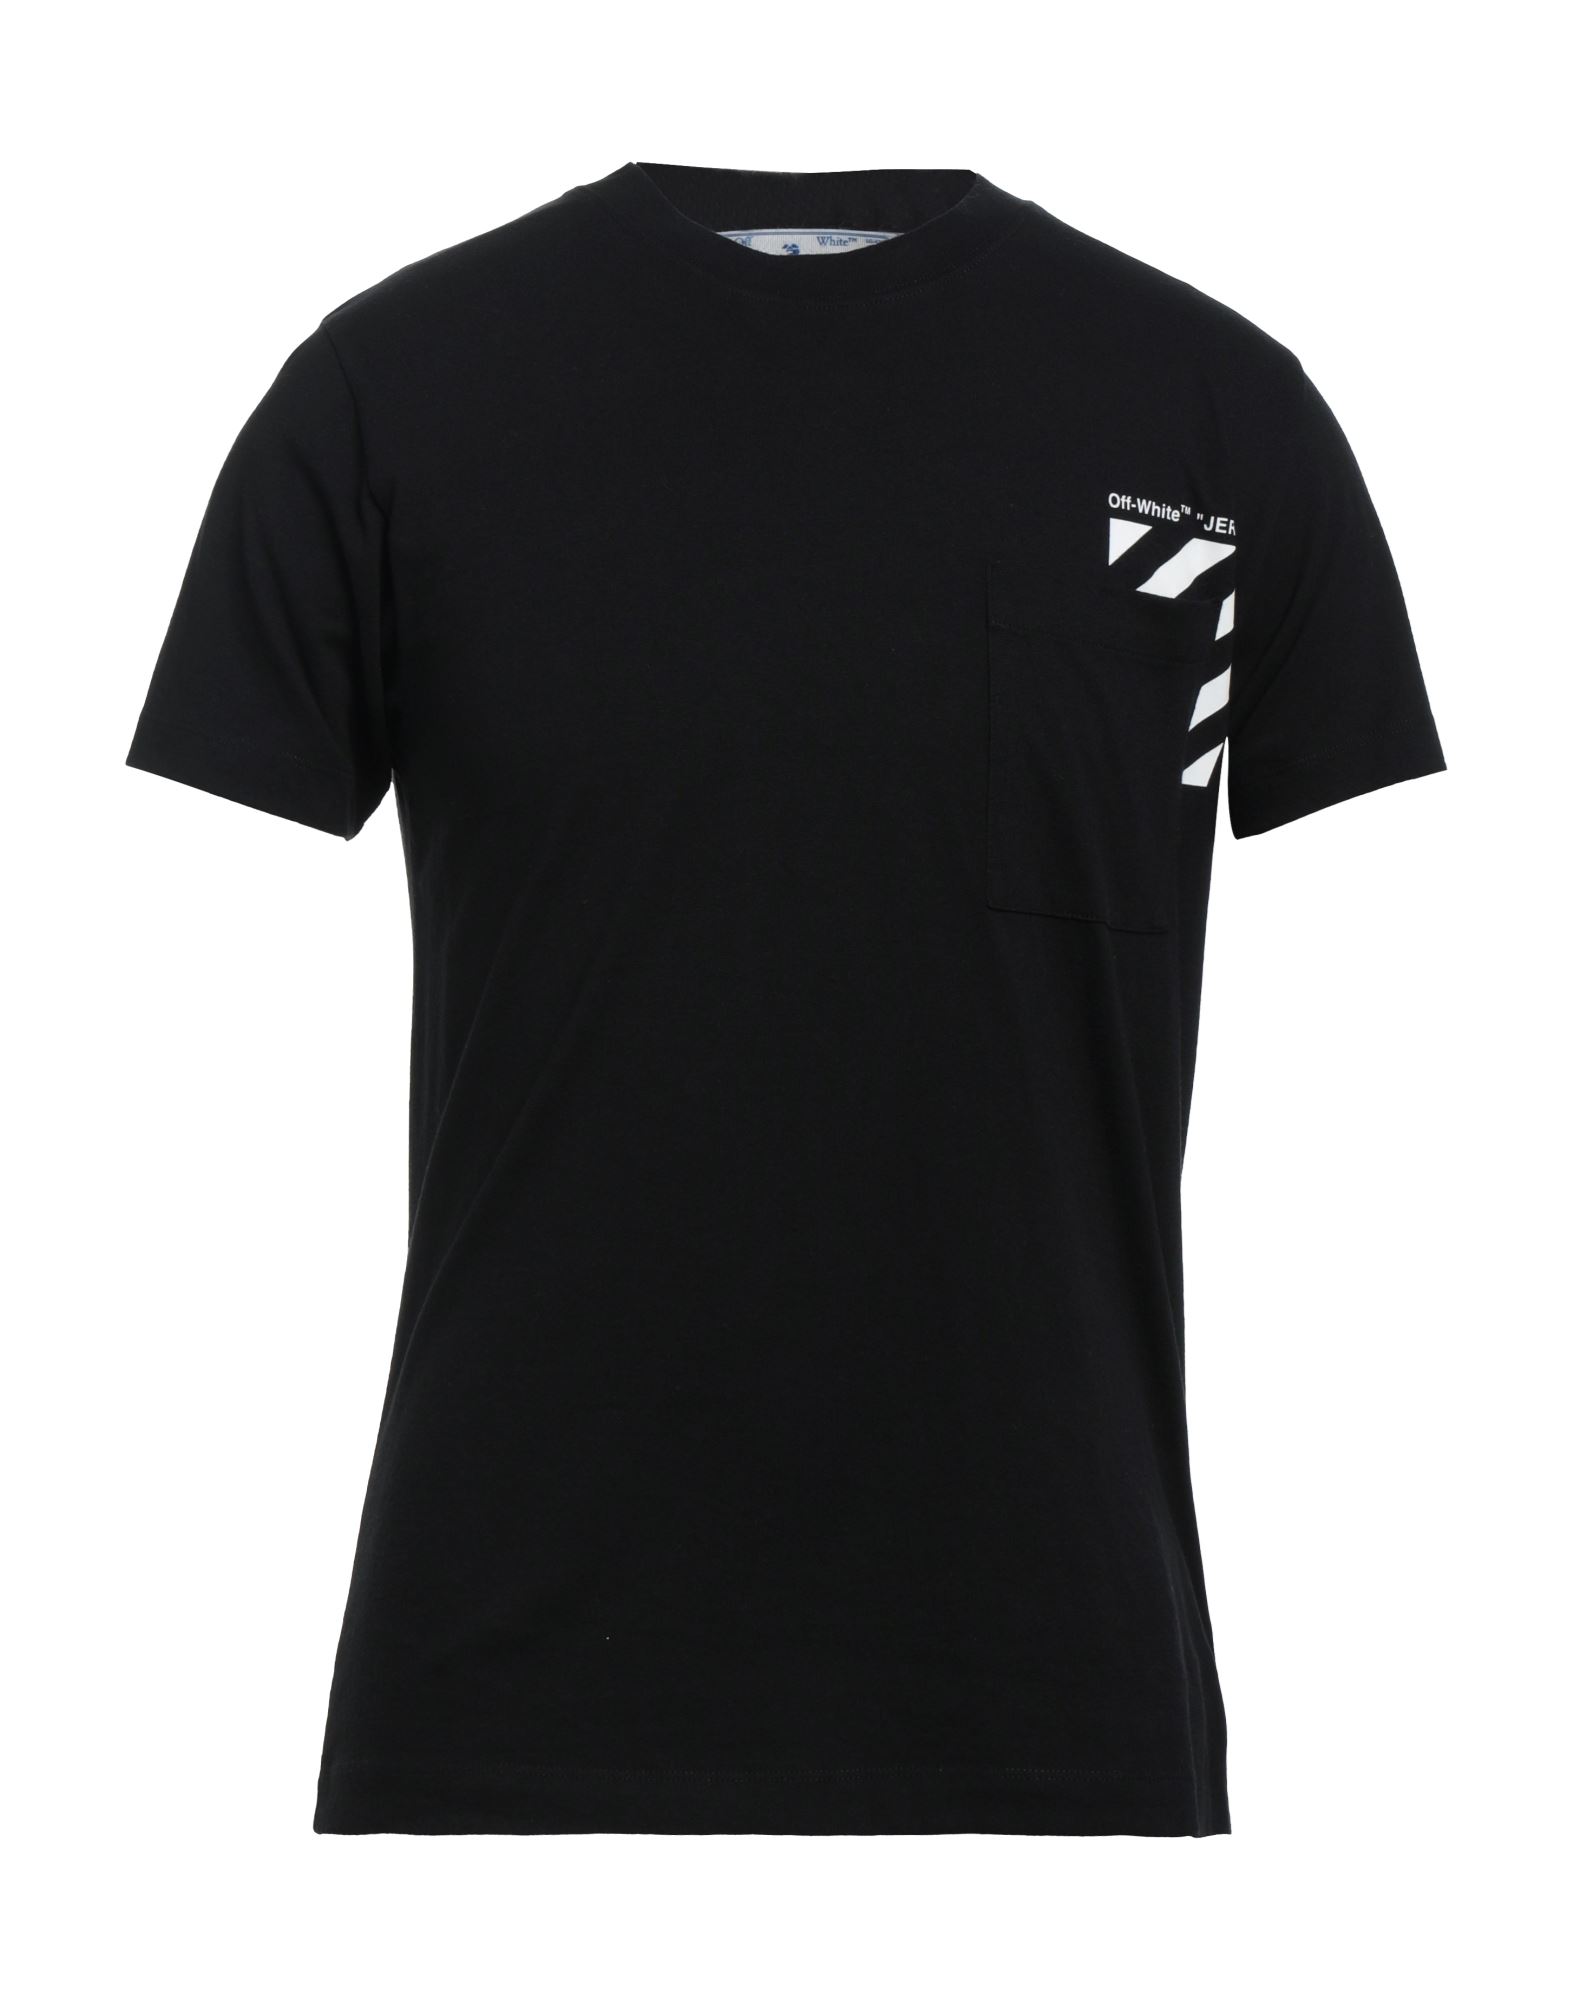 Off-white Man T-shirt Black Size Xl Cotton